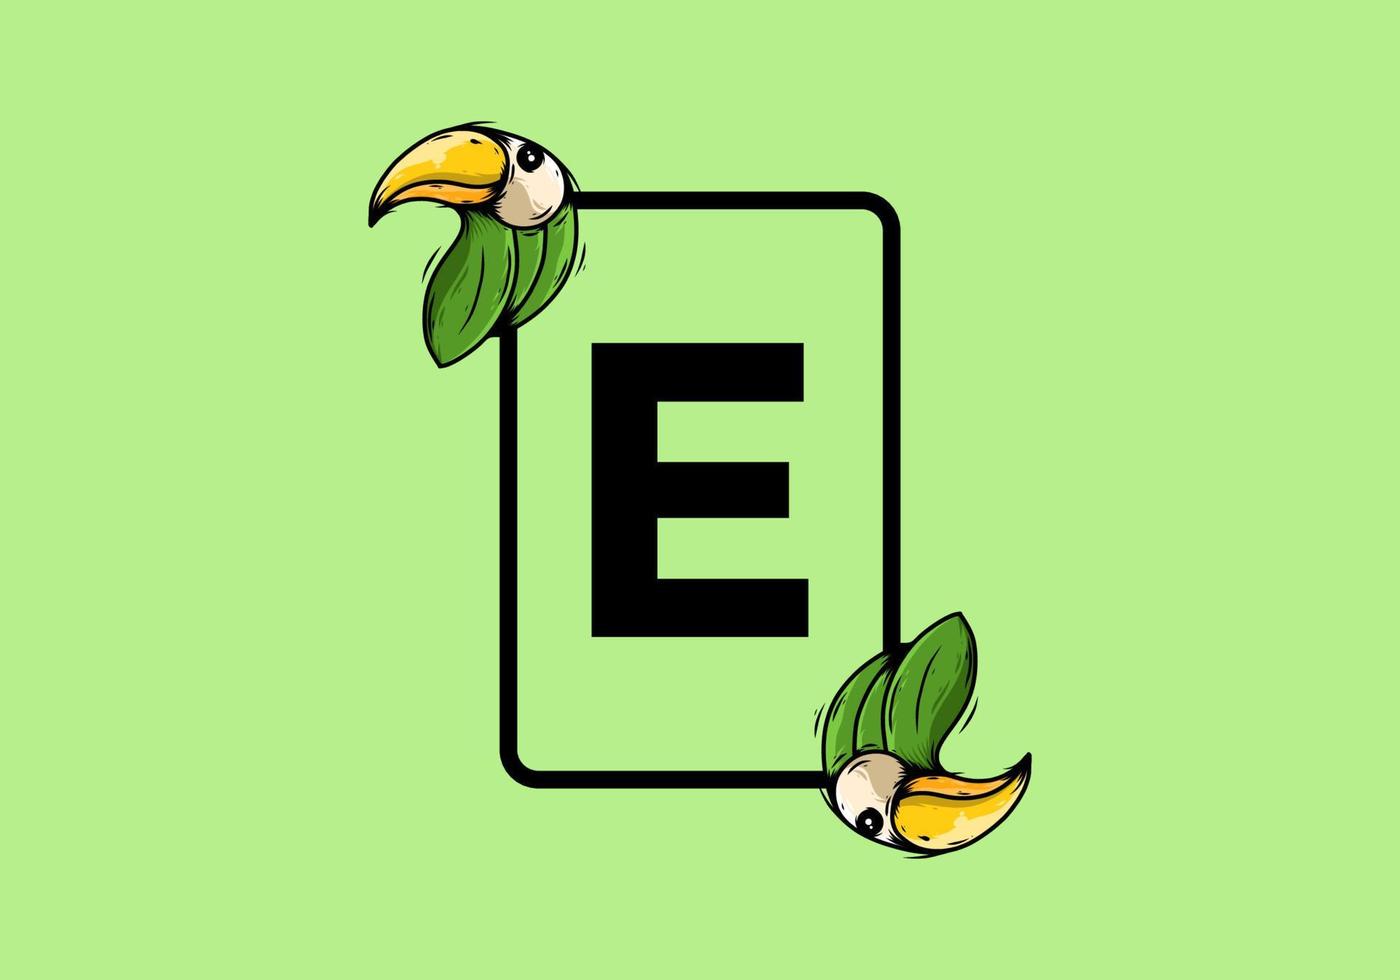 grüner vogel mit e-anfangsbuchstaben vektor